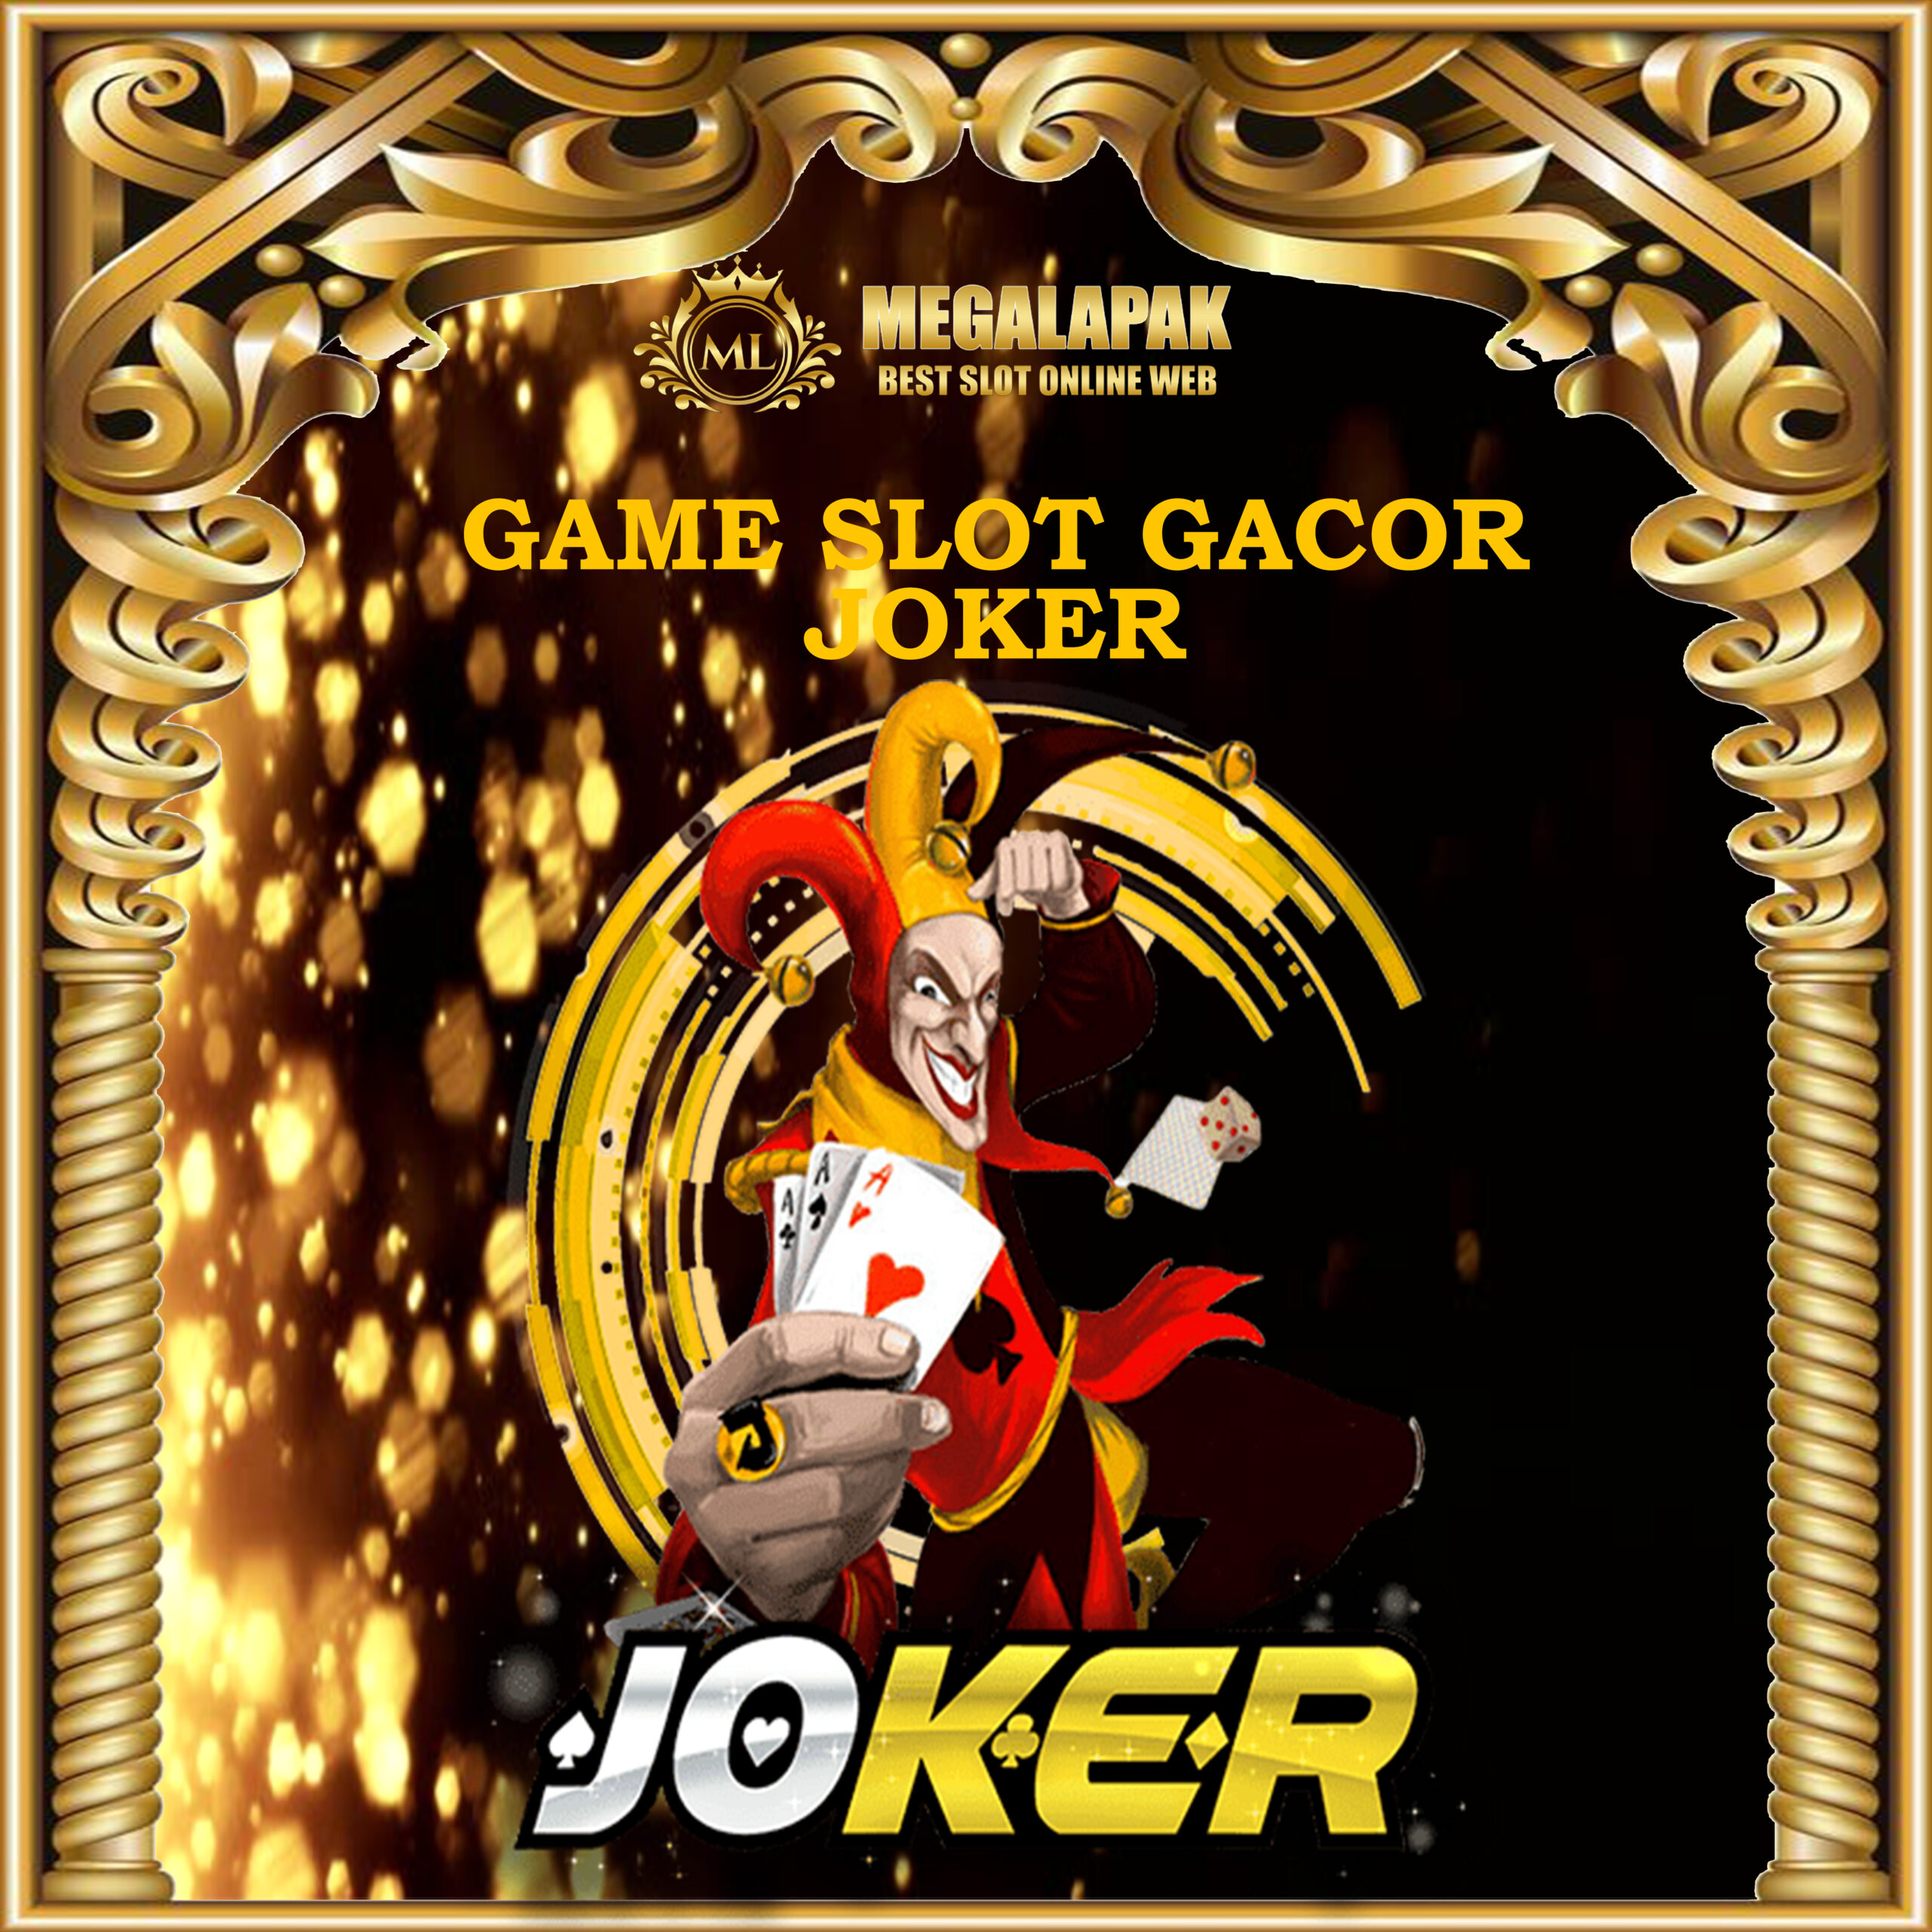 Slot Gacor Joker Megalapak